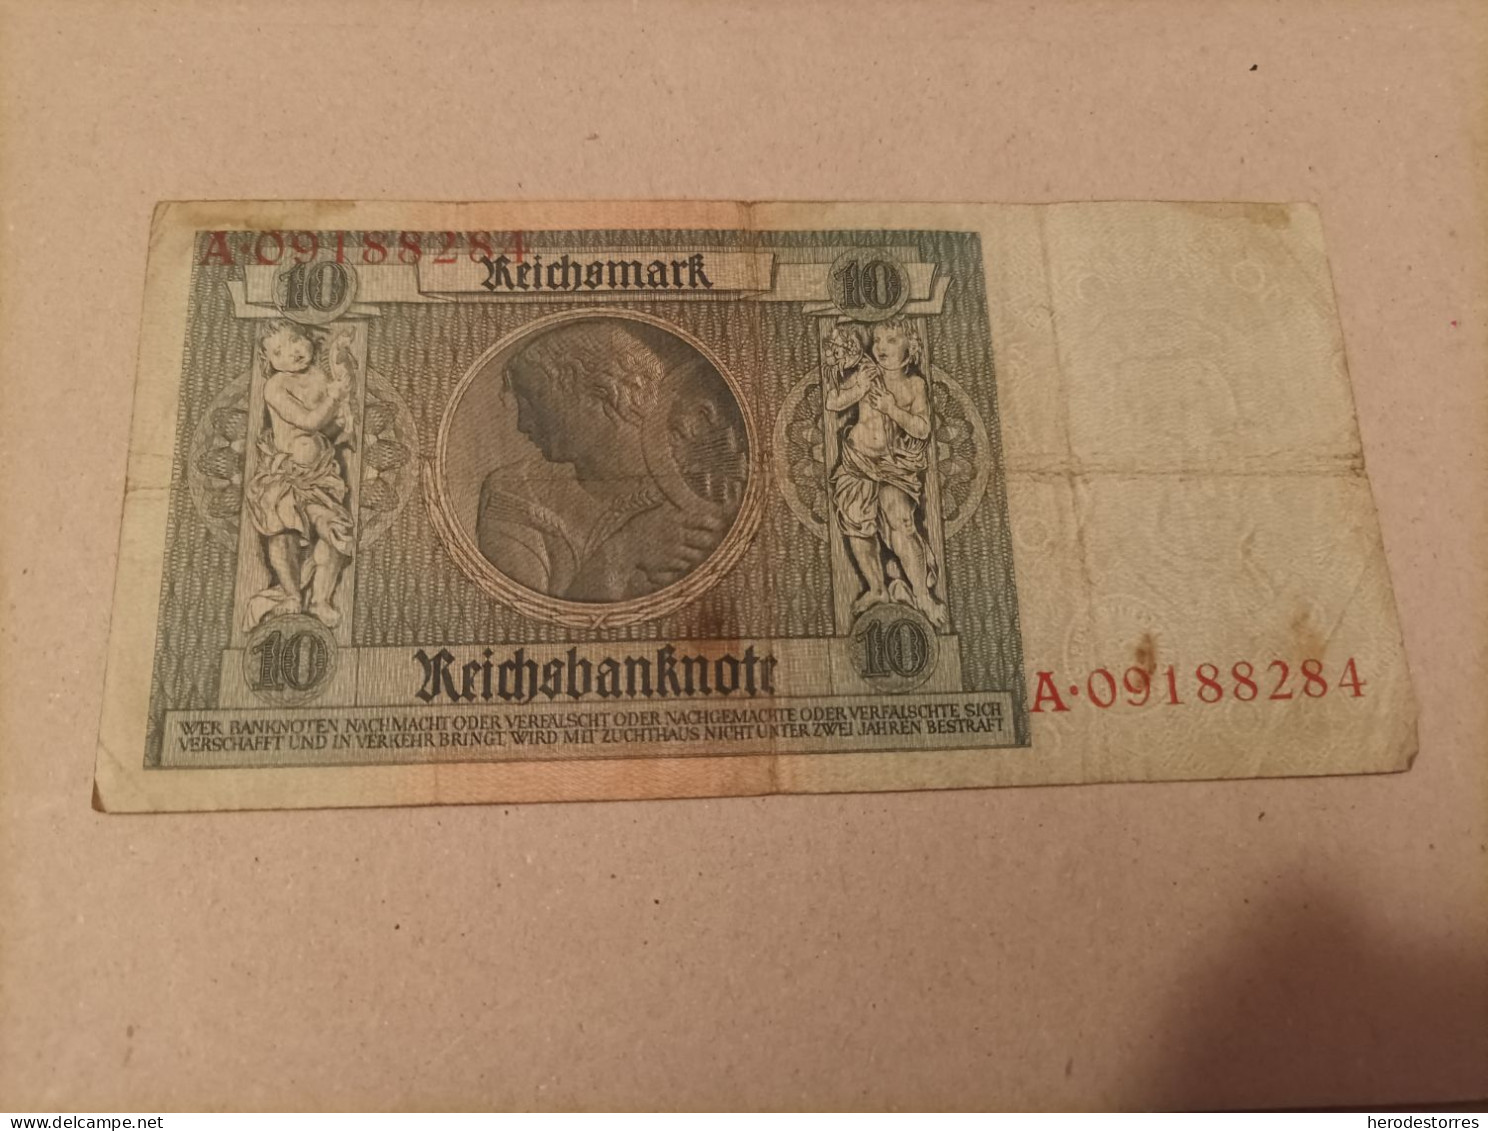 Billete Alemania, 10 Mark, Año 1929, Serie A, Con Resello En Seco - Zu Identifizieren